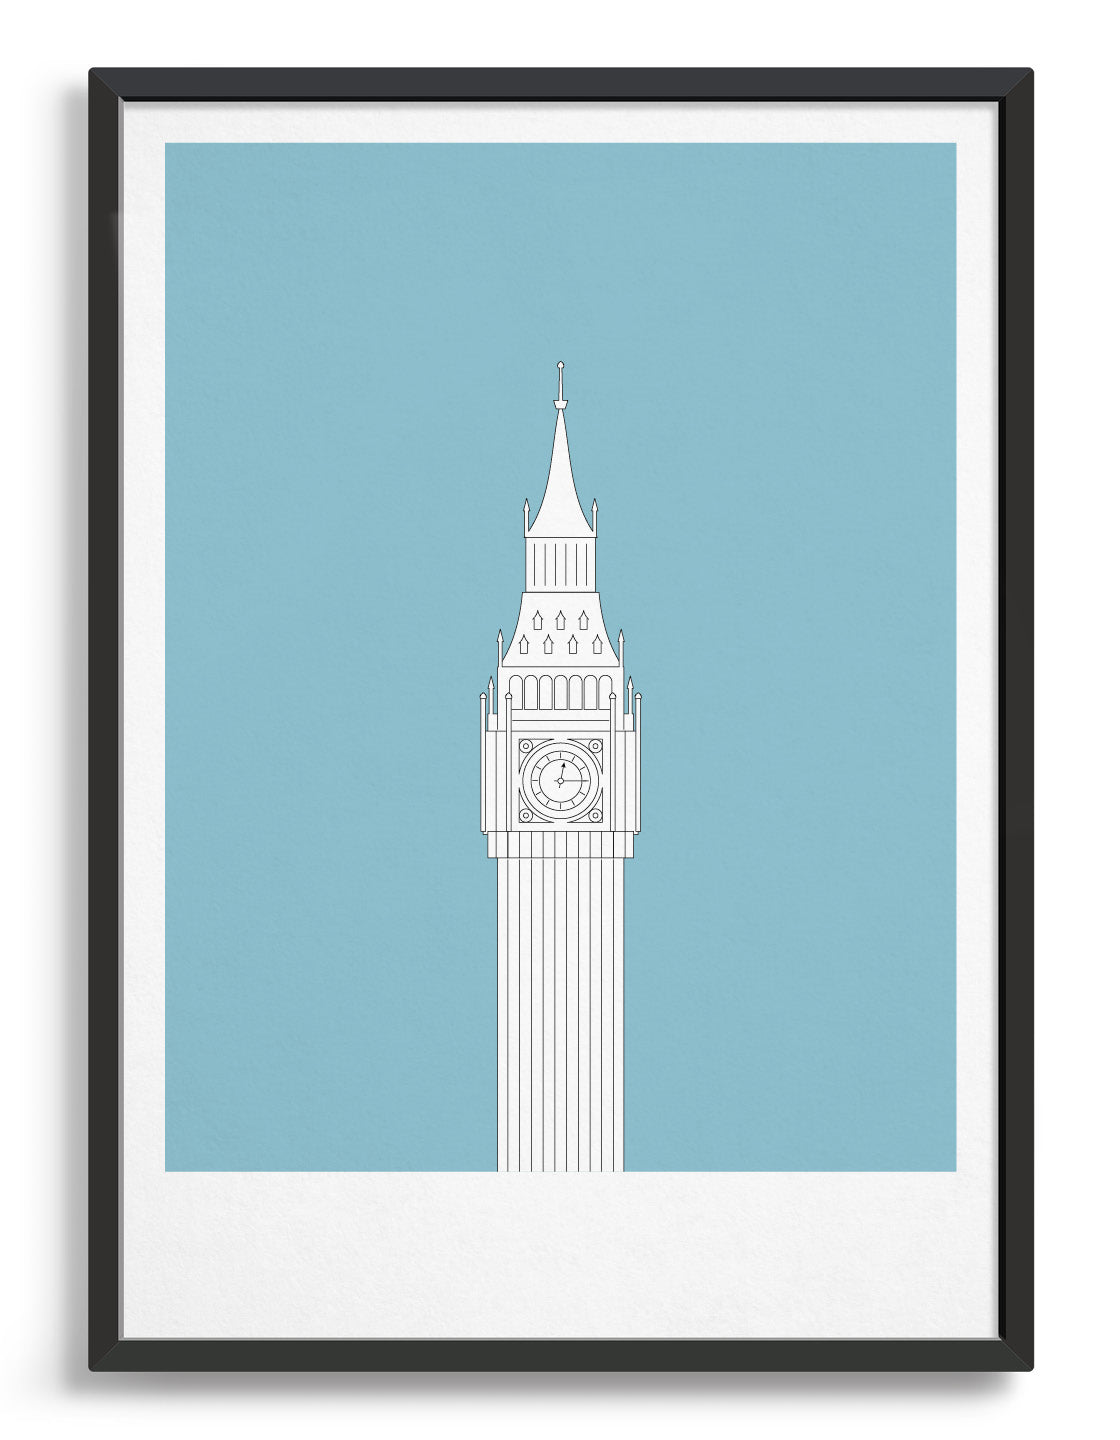 framed illustration of Big Ben in white against a light blue background